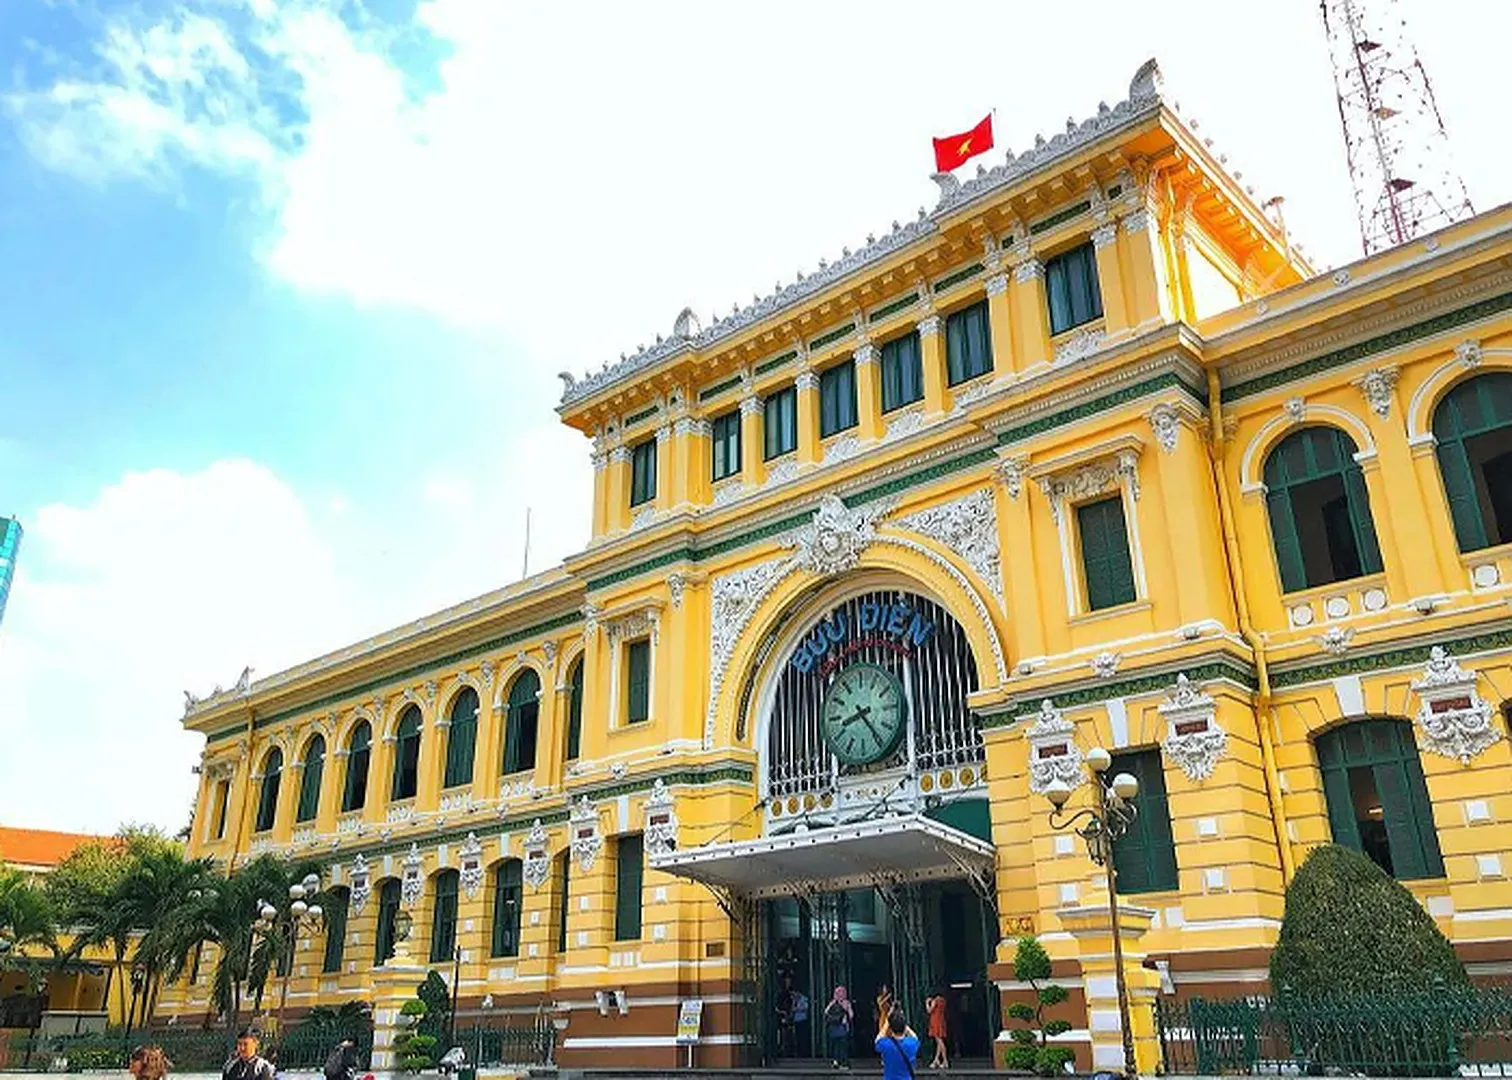 Bưu điện trung tâm Thành phố - Nét hoài niệm Sài Gòn xưa